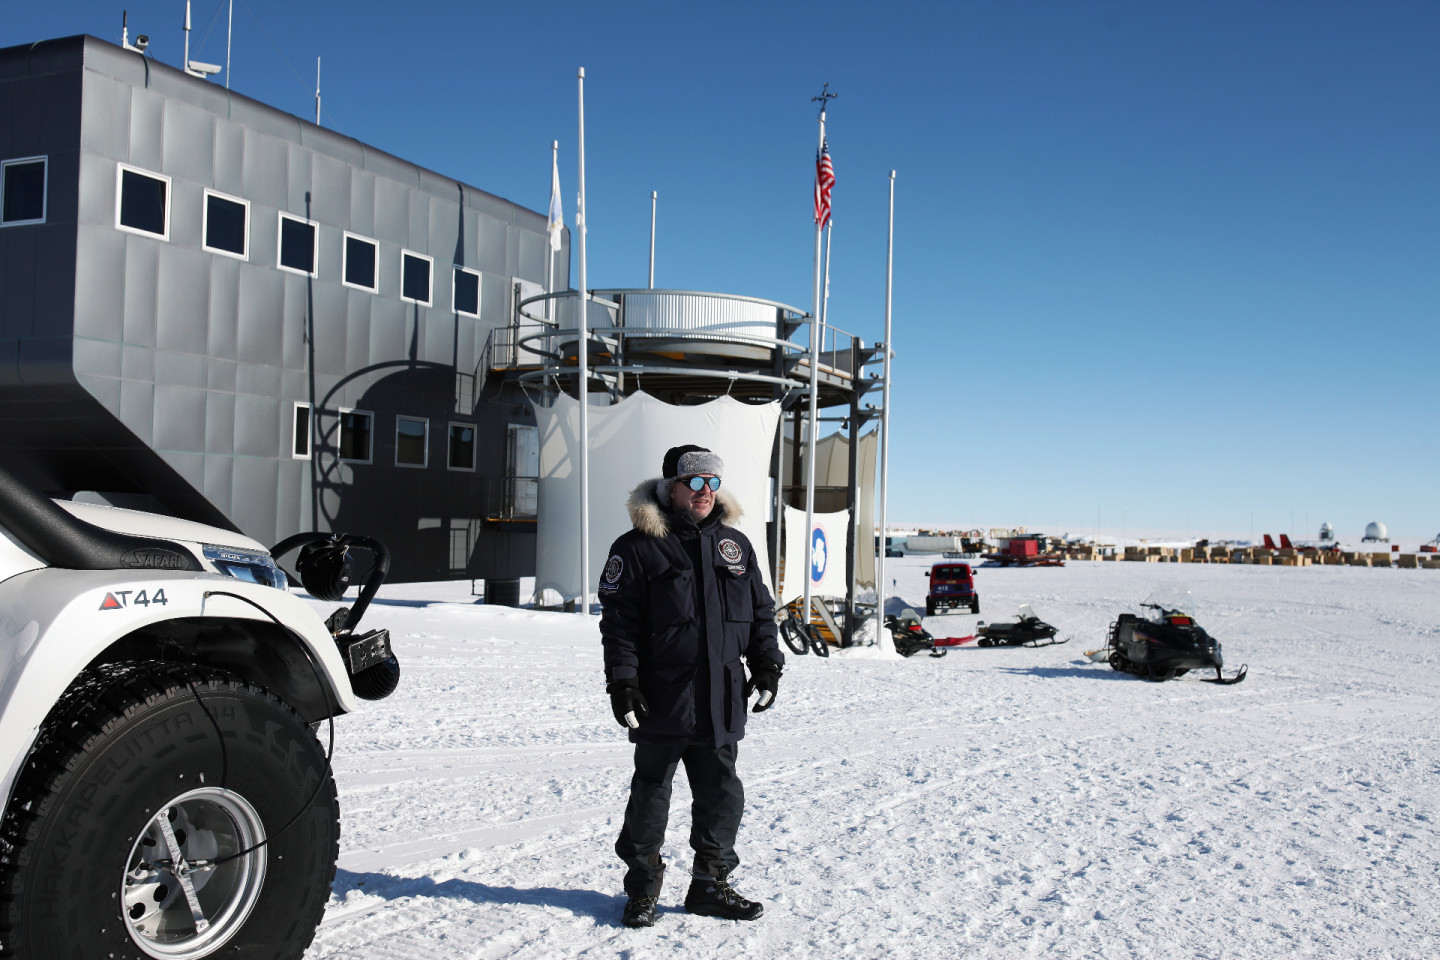 Руководитель экспедиции "Антропогеос" Сардар С. Сардаров на американской исследовательской станции на Южном полюсе